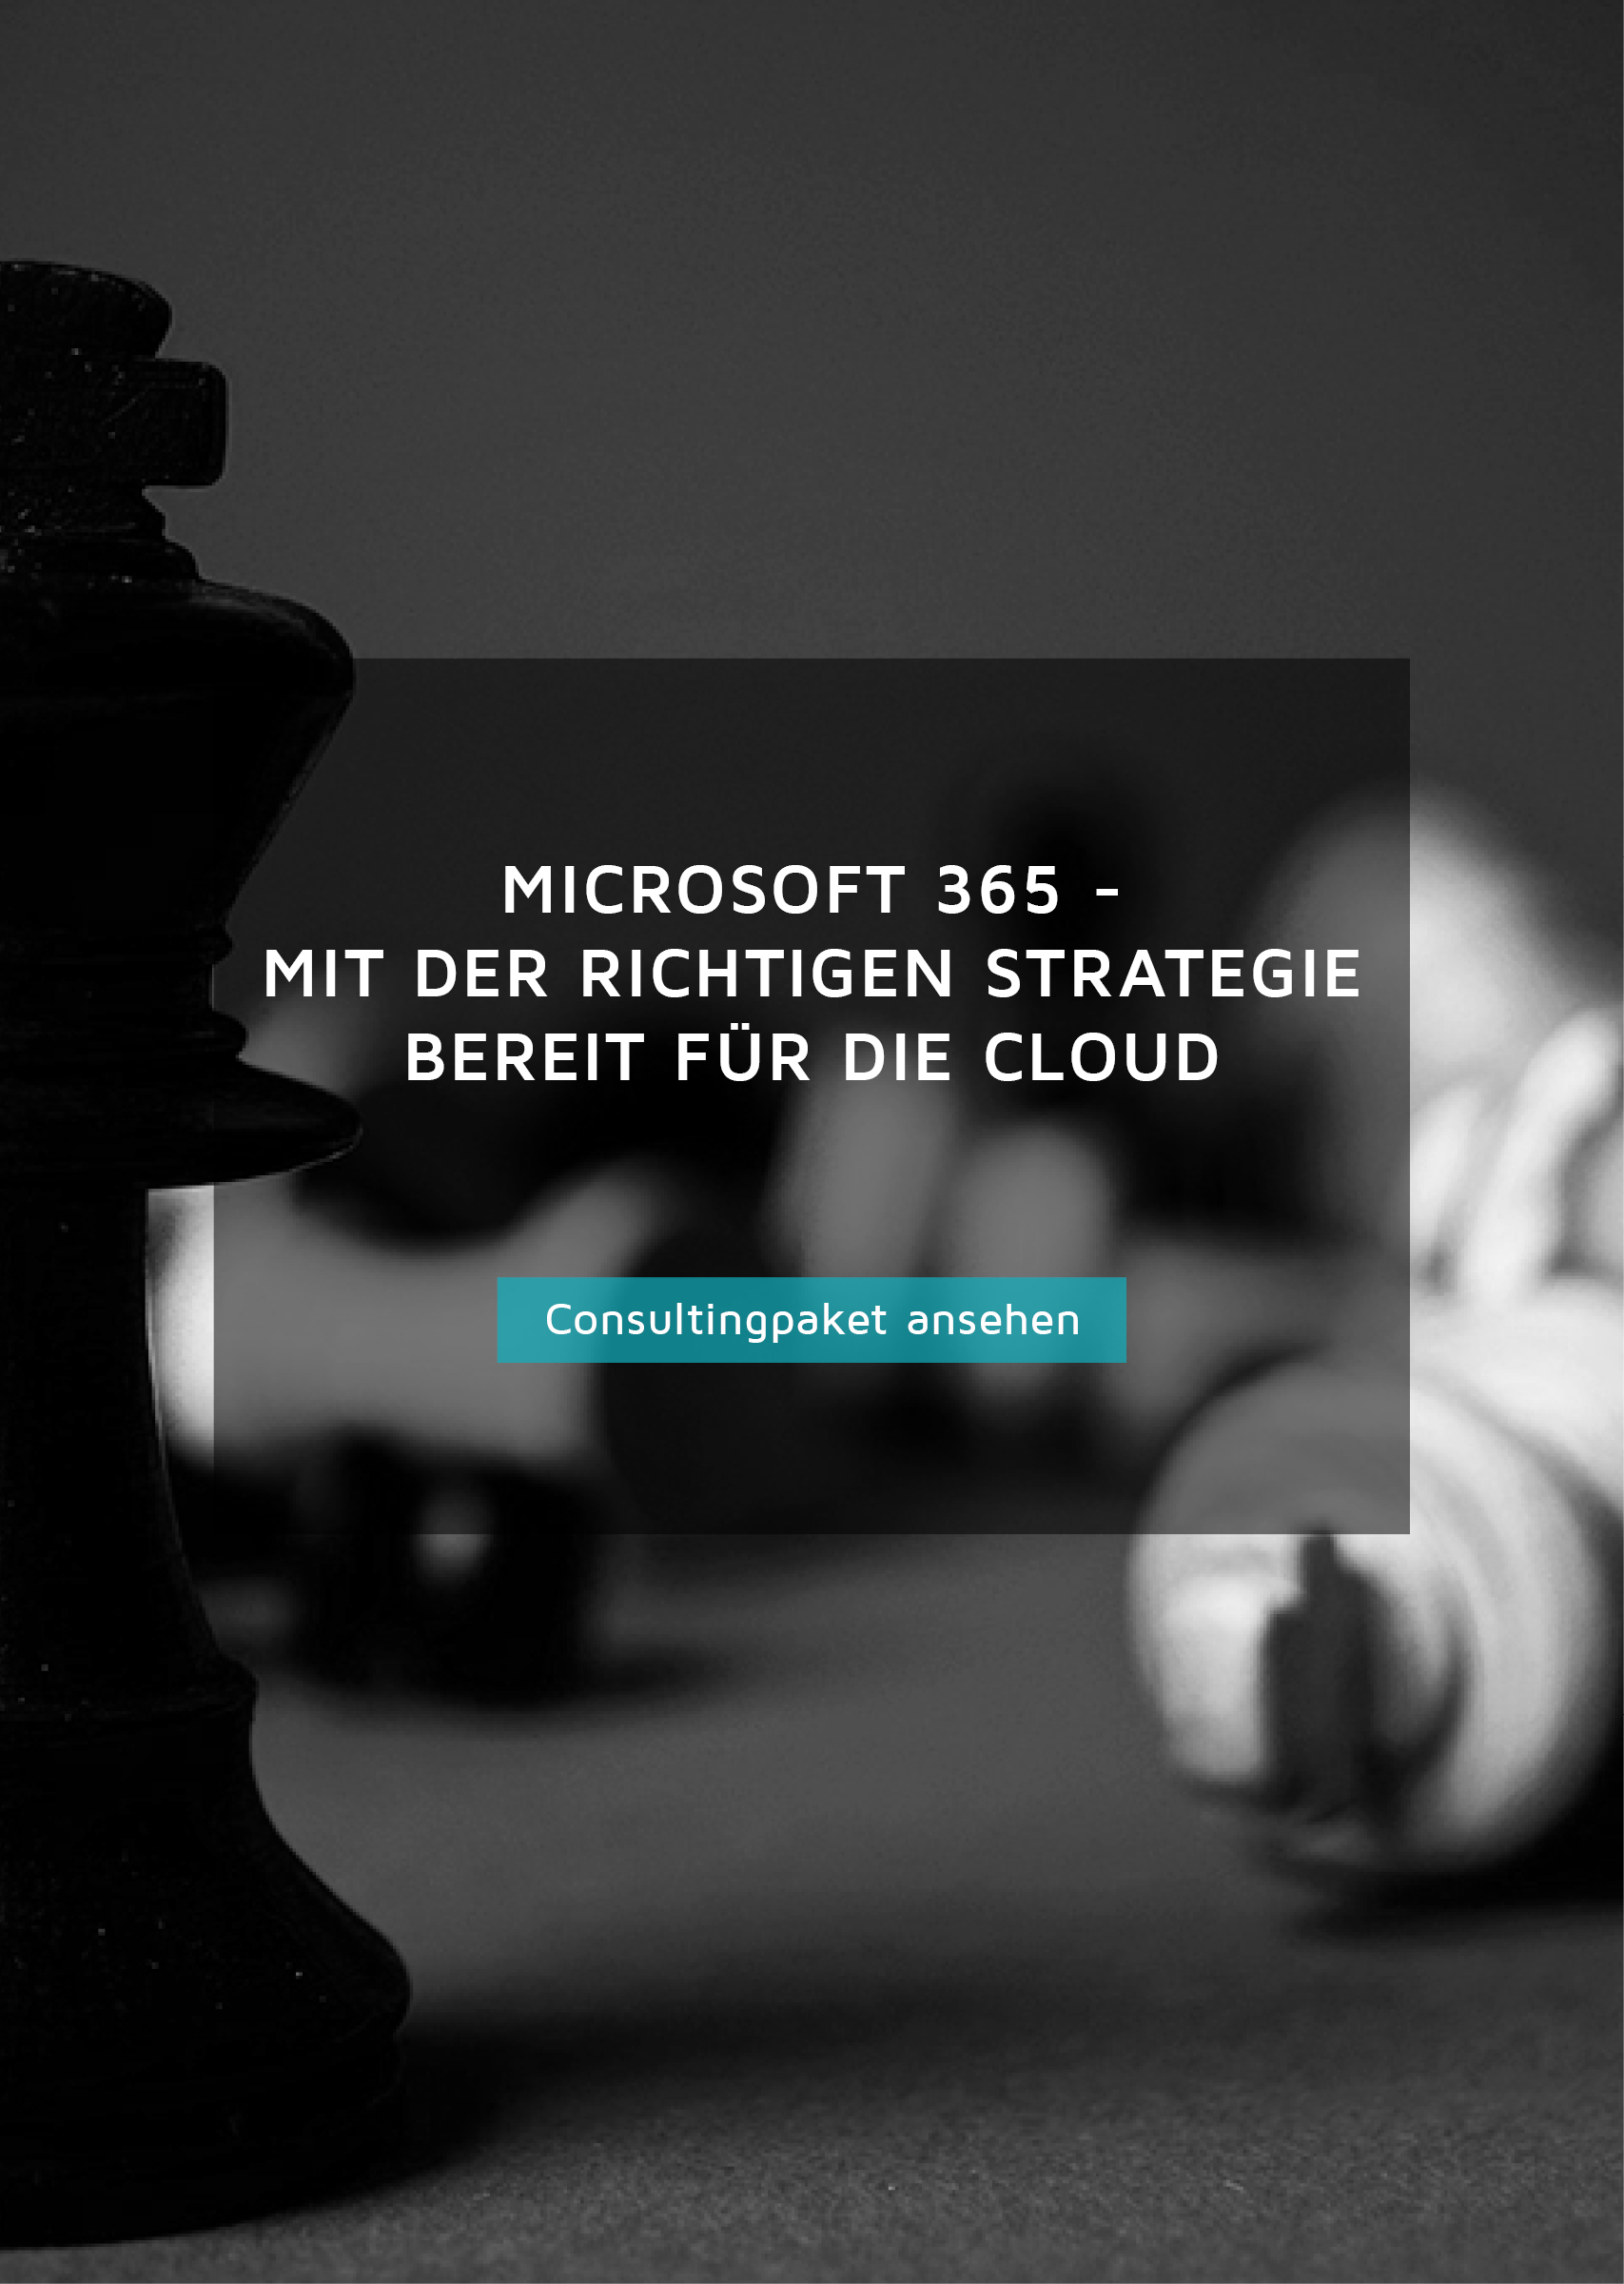 Consultingpaket für Microsoft 365, mit der richtigen Strategie bereit für die Cloud, Button